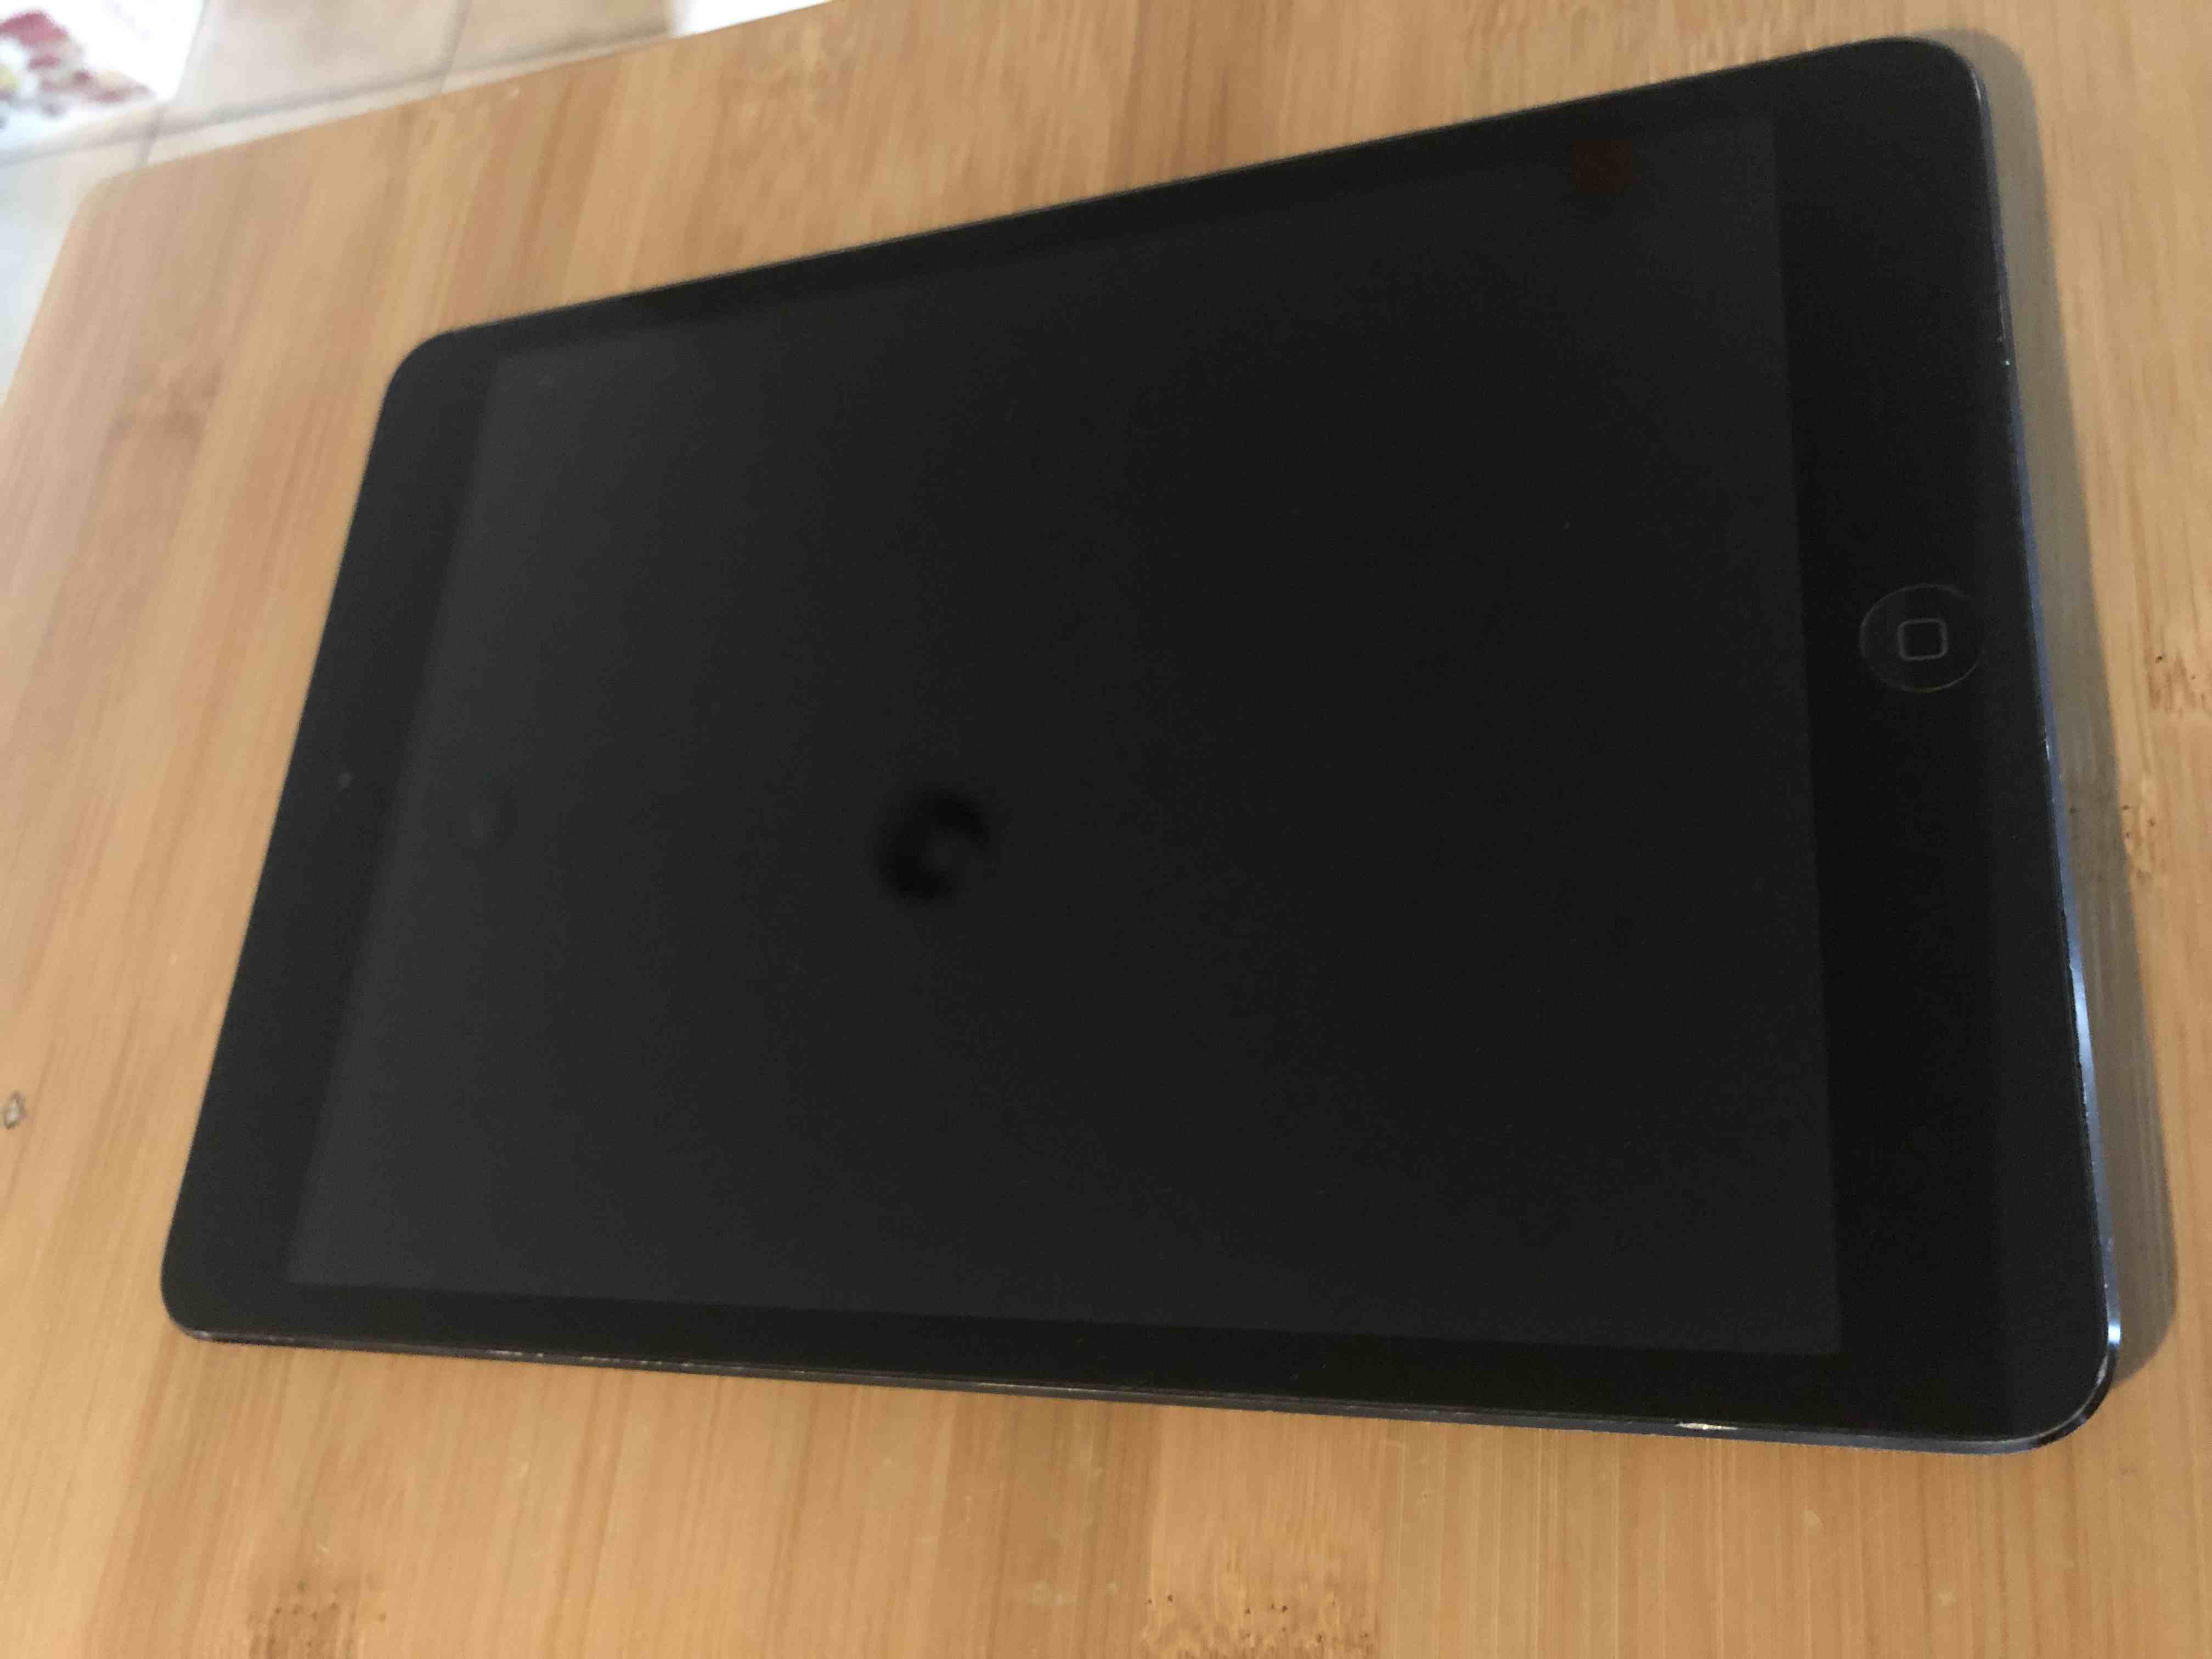 Een schoon en reflecterend iPad-scherm